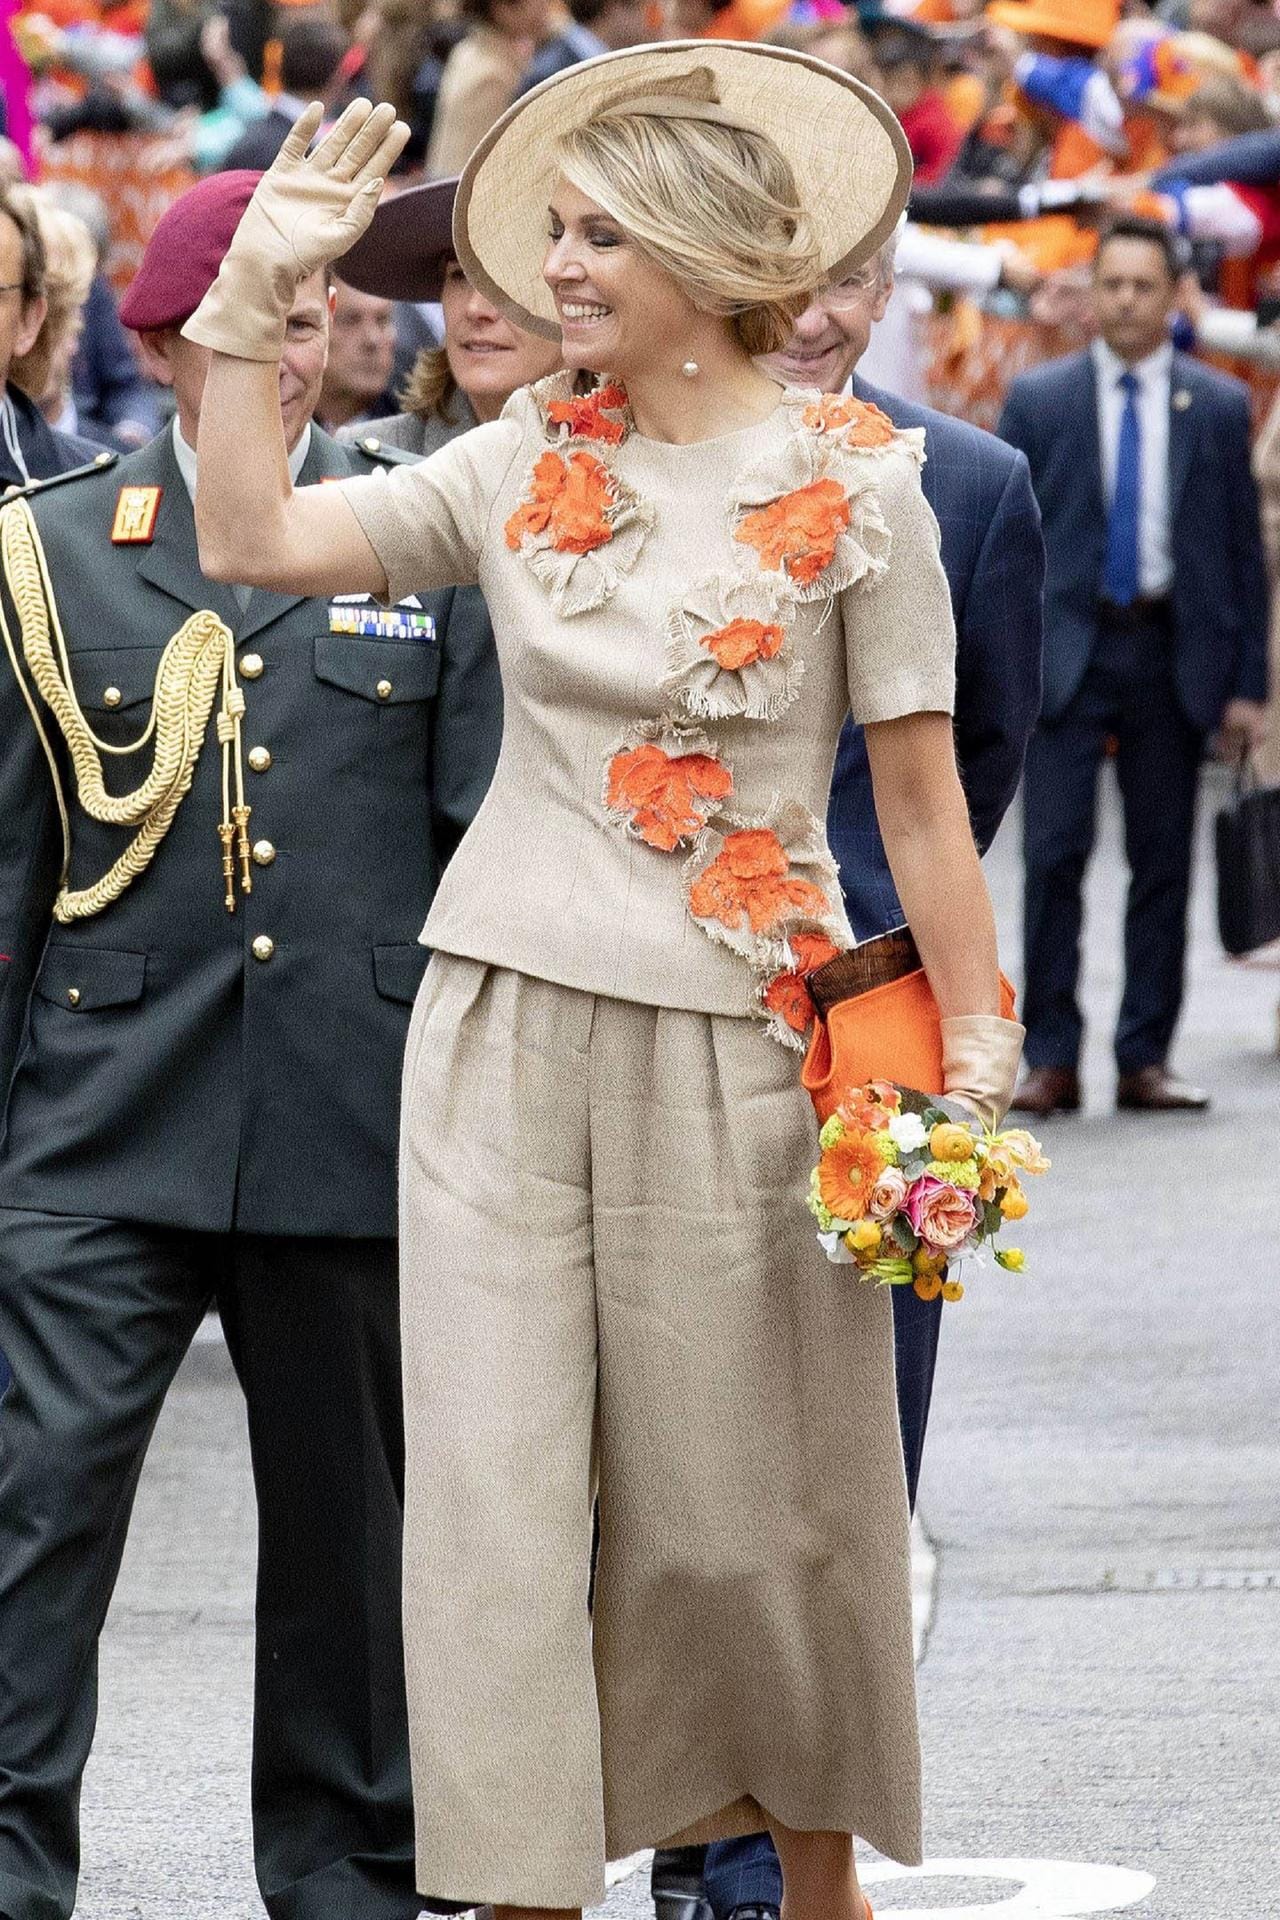 Königin Maxima entschied sich für ein beigefarbenes Outfit mit orangenen Blumen-Applikationen.